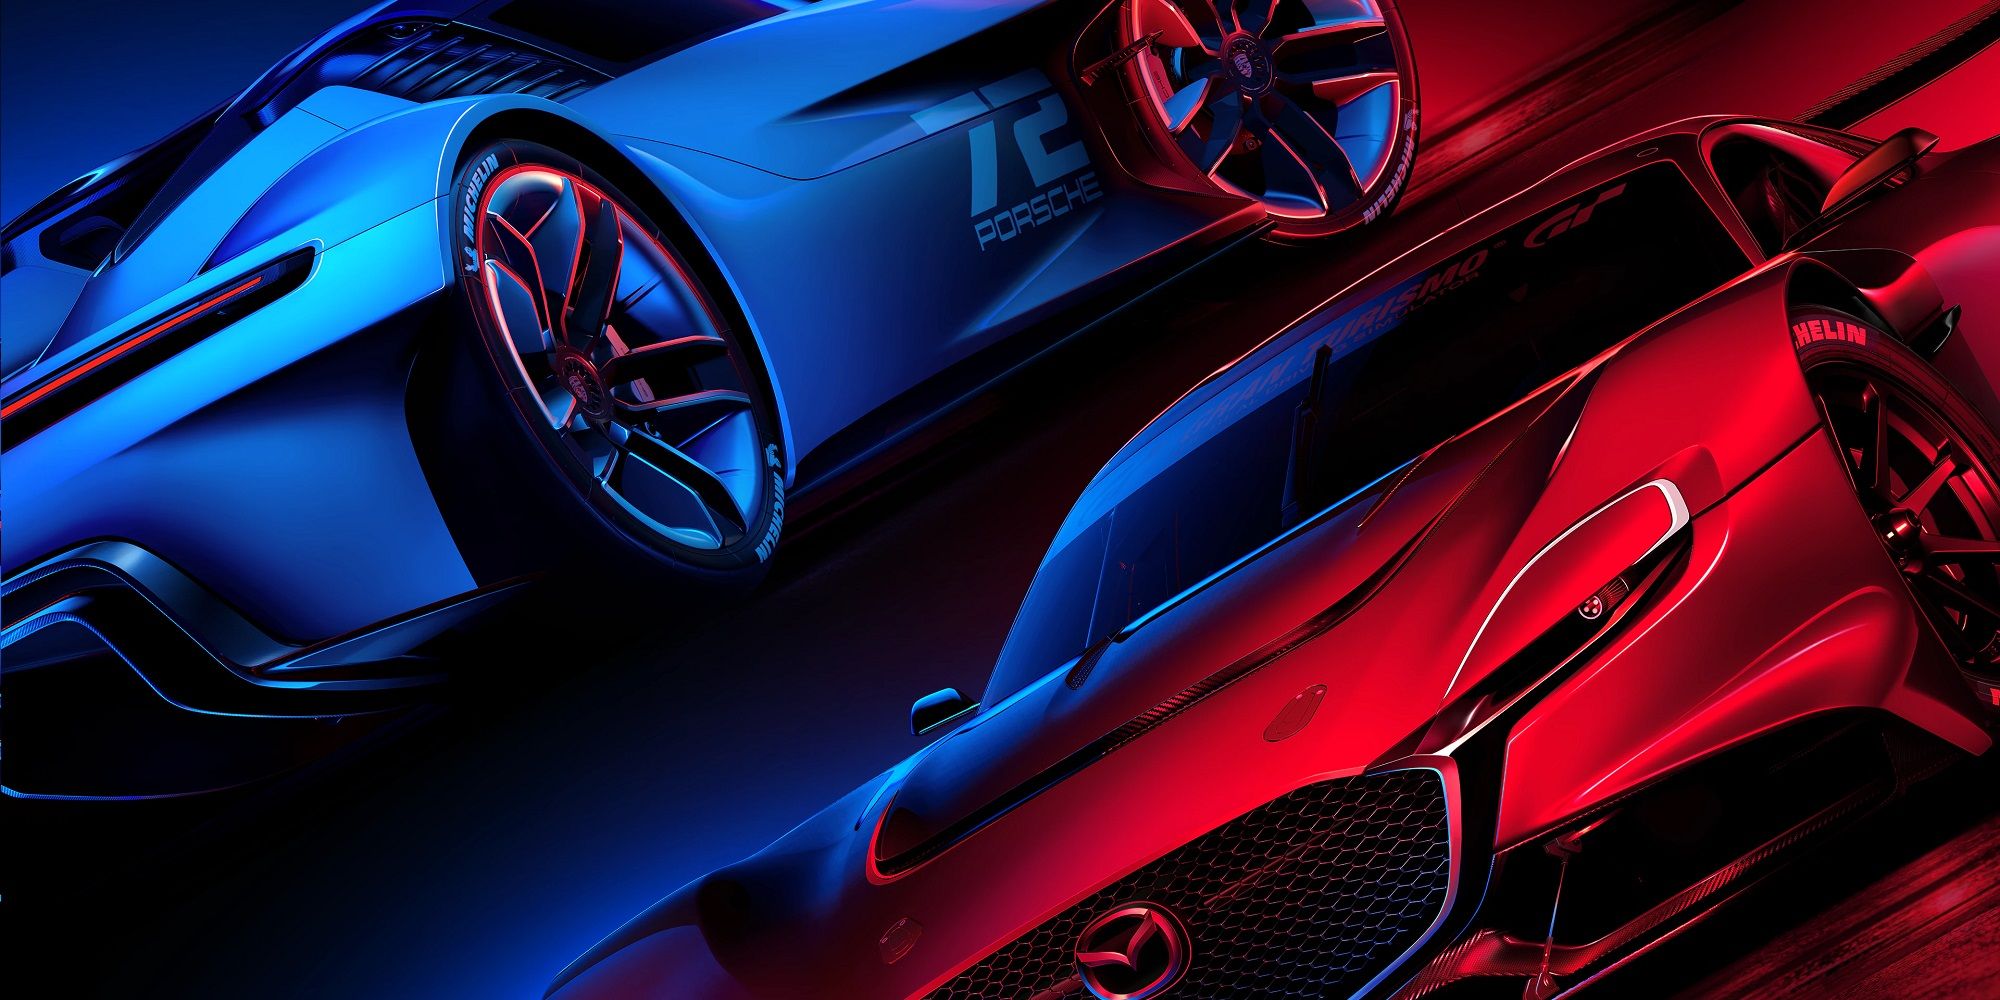 Описание обновления 1.24 для Gran Turismo 7 (GT7) сегодня, 6 октября